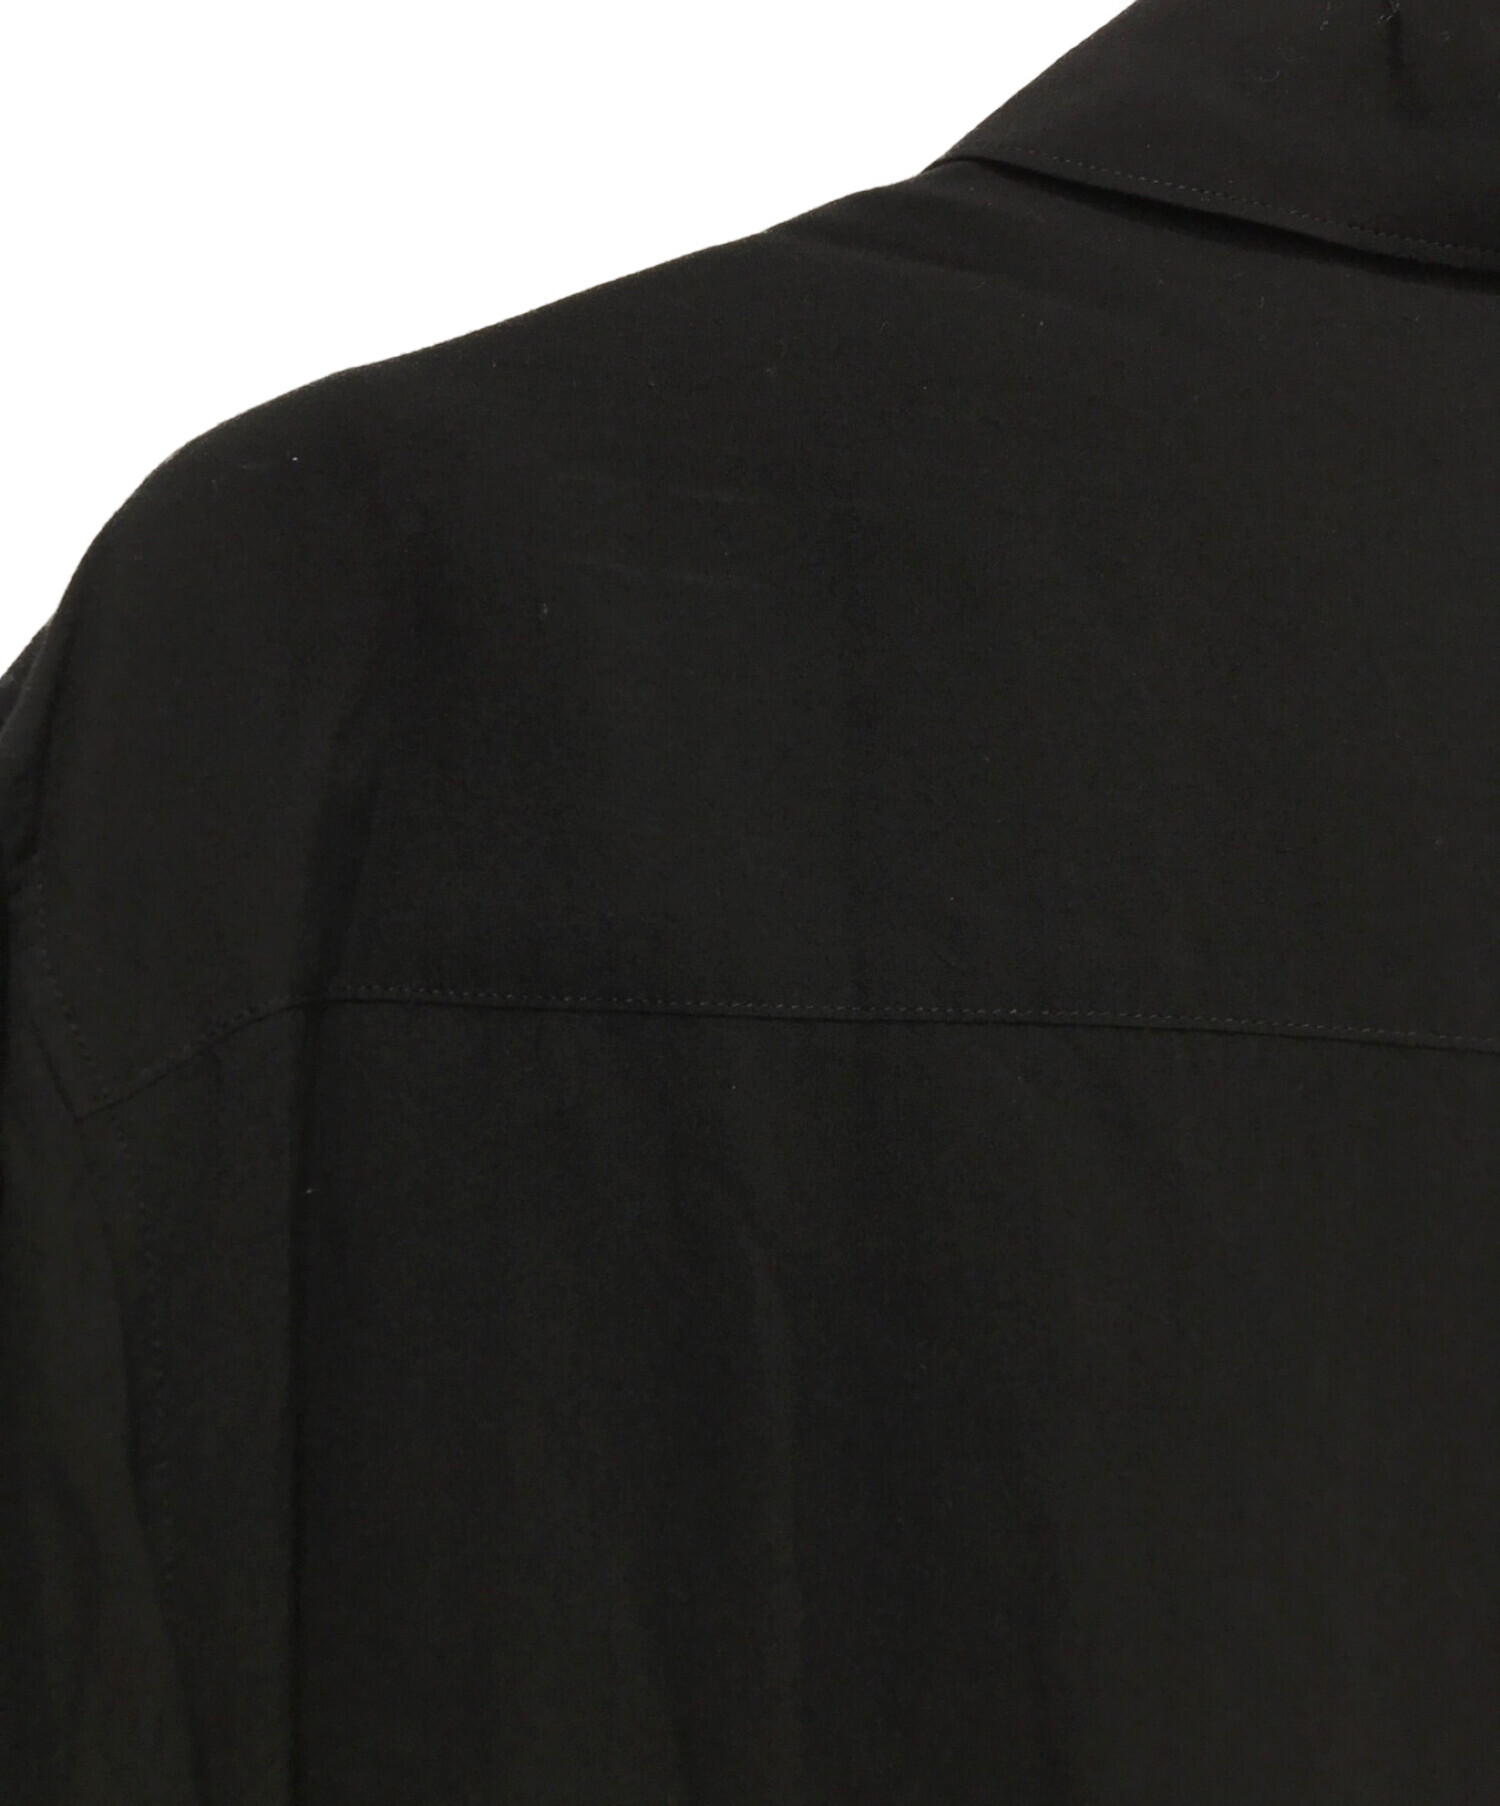 Yohji Yamamoto pour homme (ヨウジヤマモト プールオム) 襟デザインシャツ ブラック サイズ:3